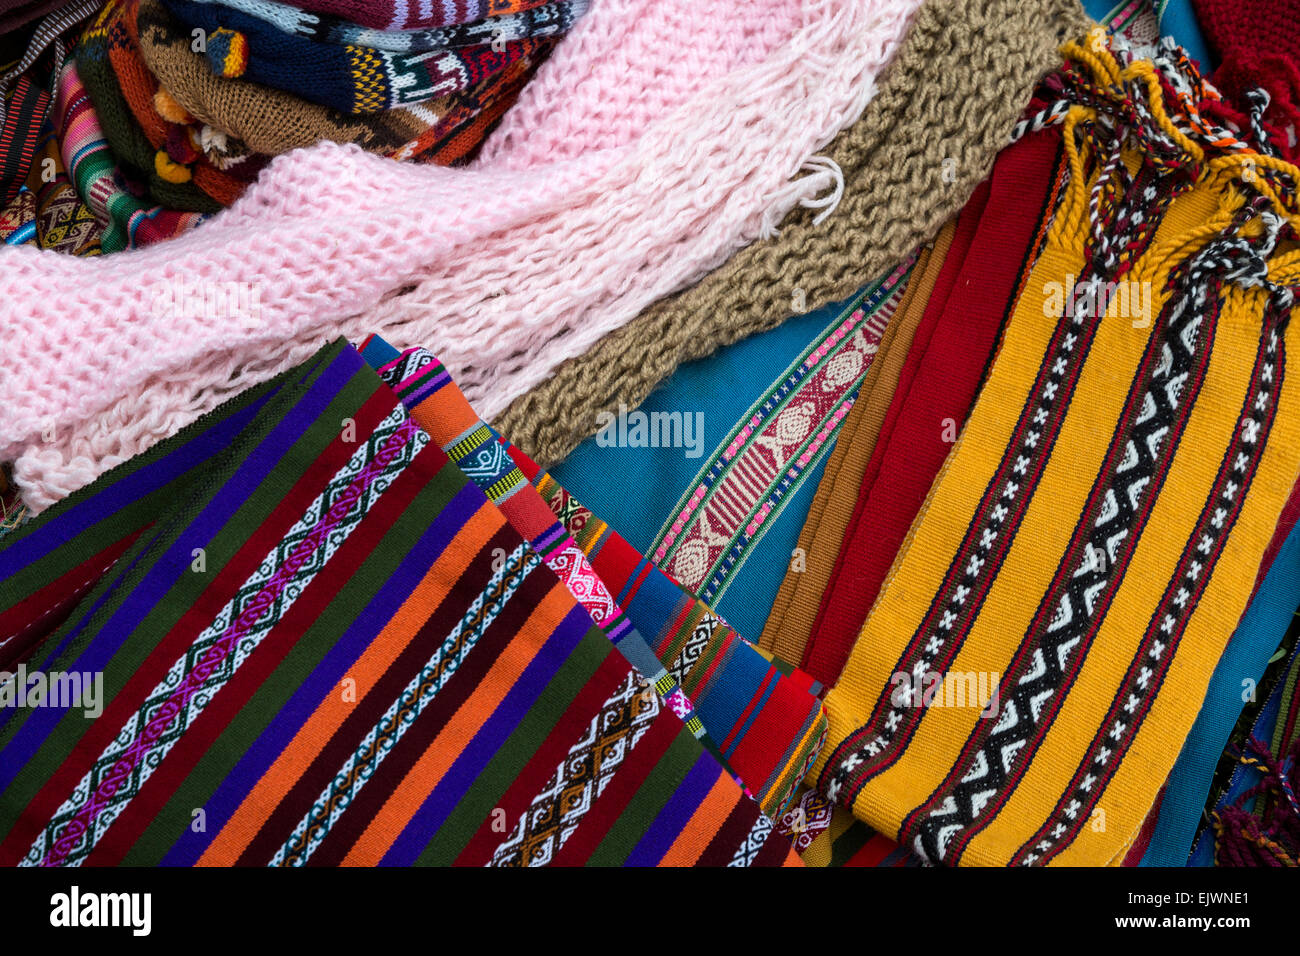 Pérou, vallée de l'Urubamba, Village Quechua d'Misminay. Textiles tissés localement, les écharpes et les chapeaux. Banque D'Images